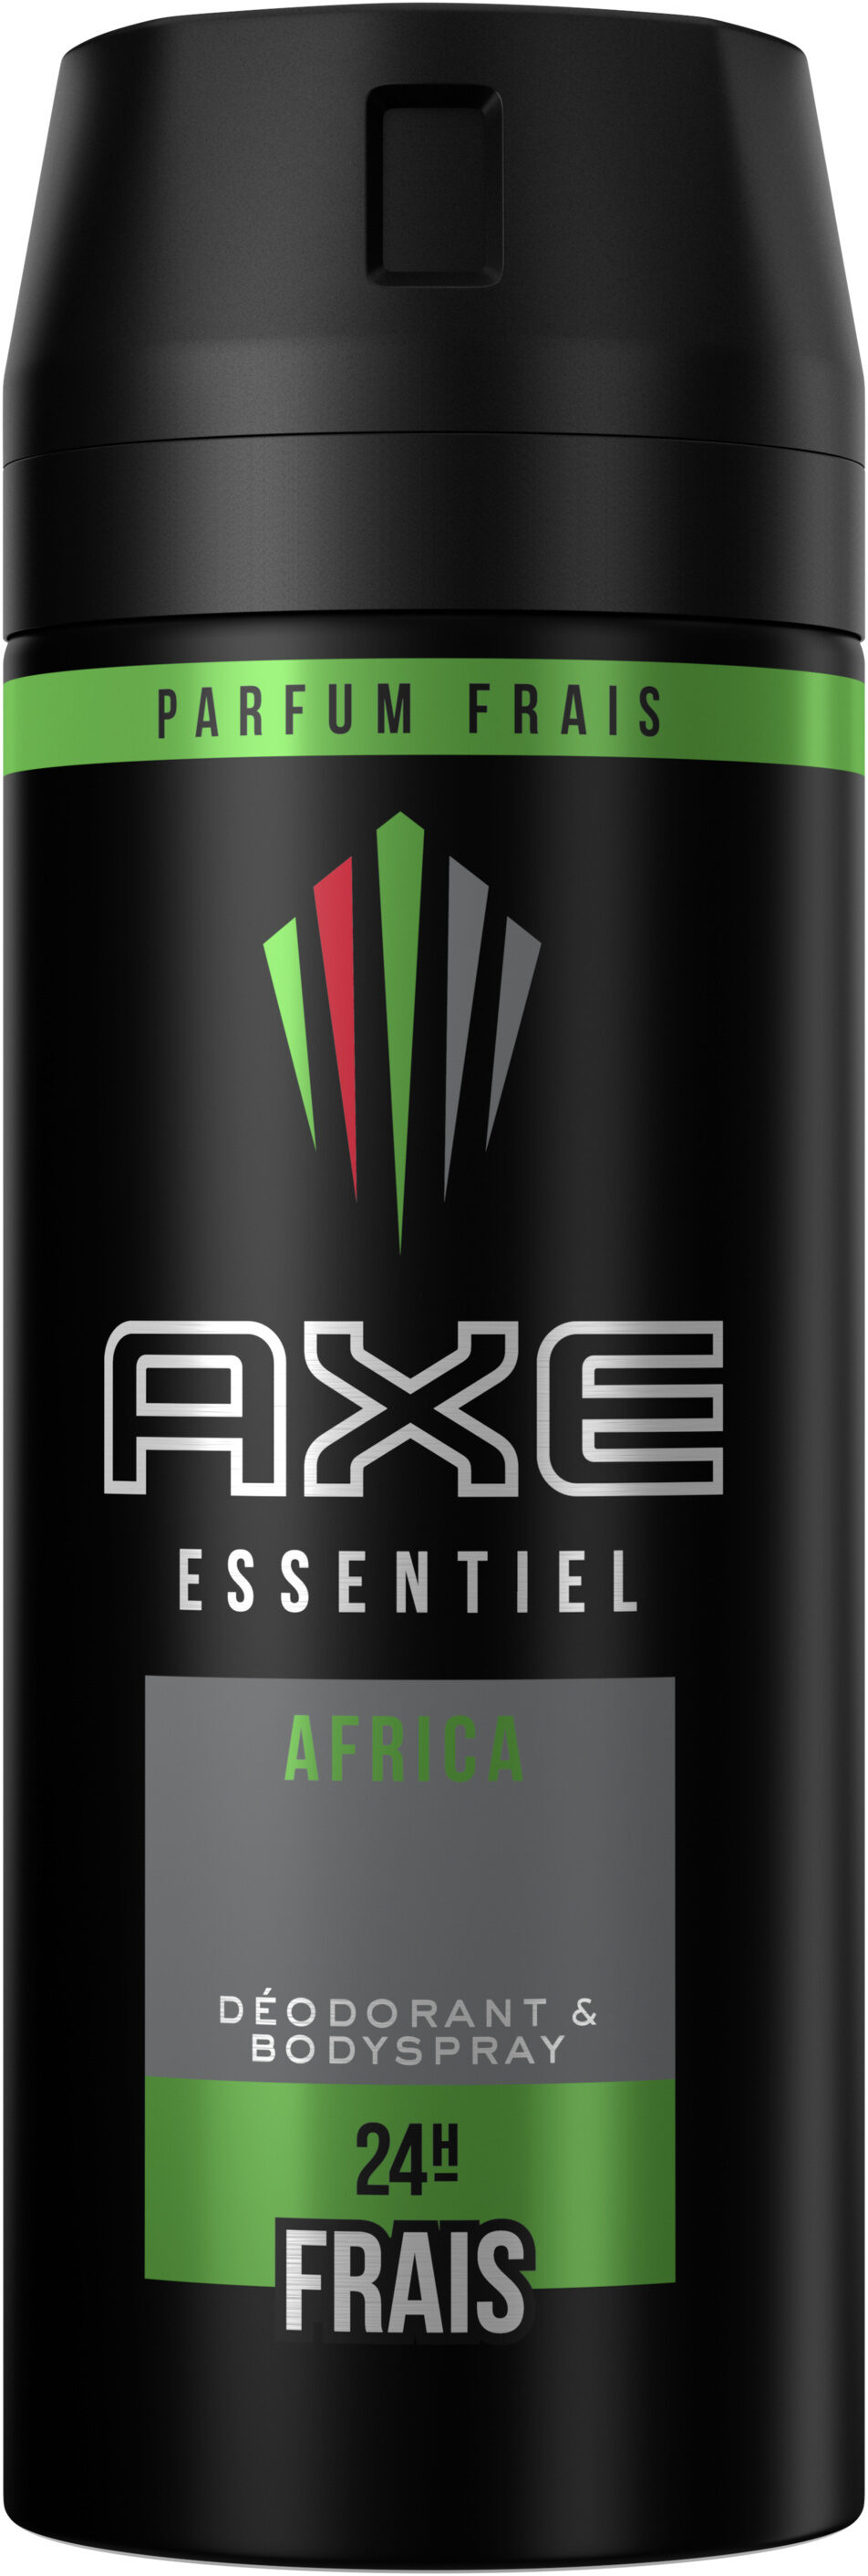 Axe Déodorant Homme Spray Africa 150ml - Produit - fr